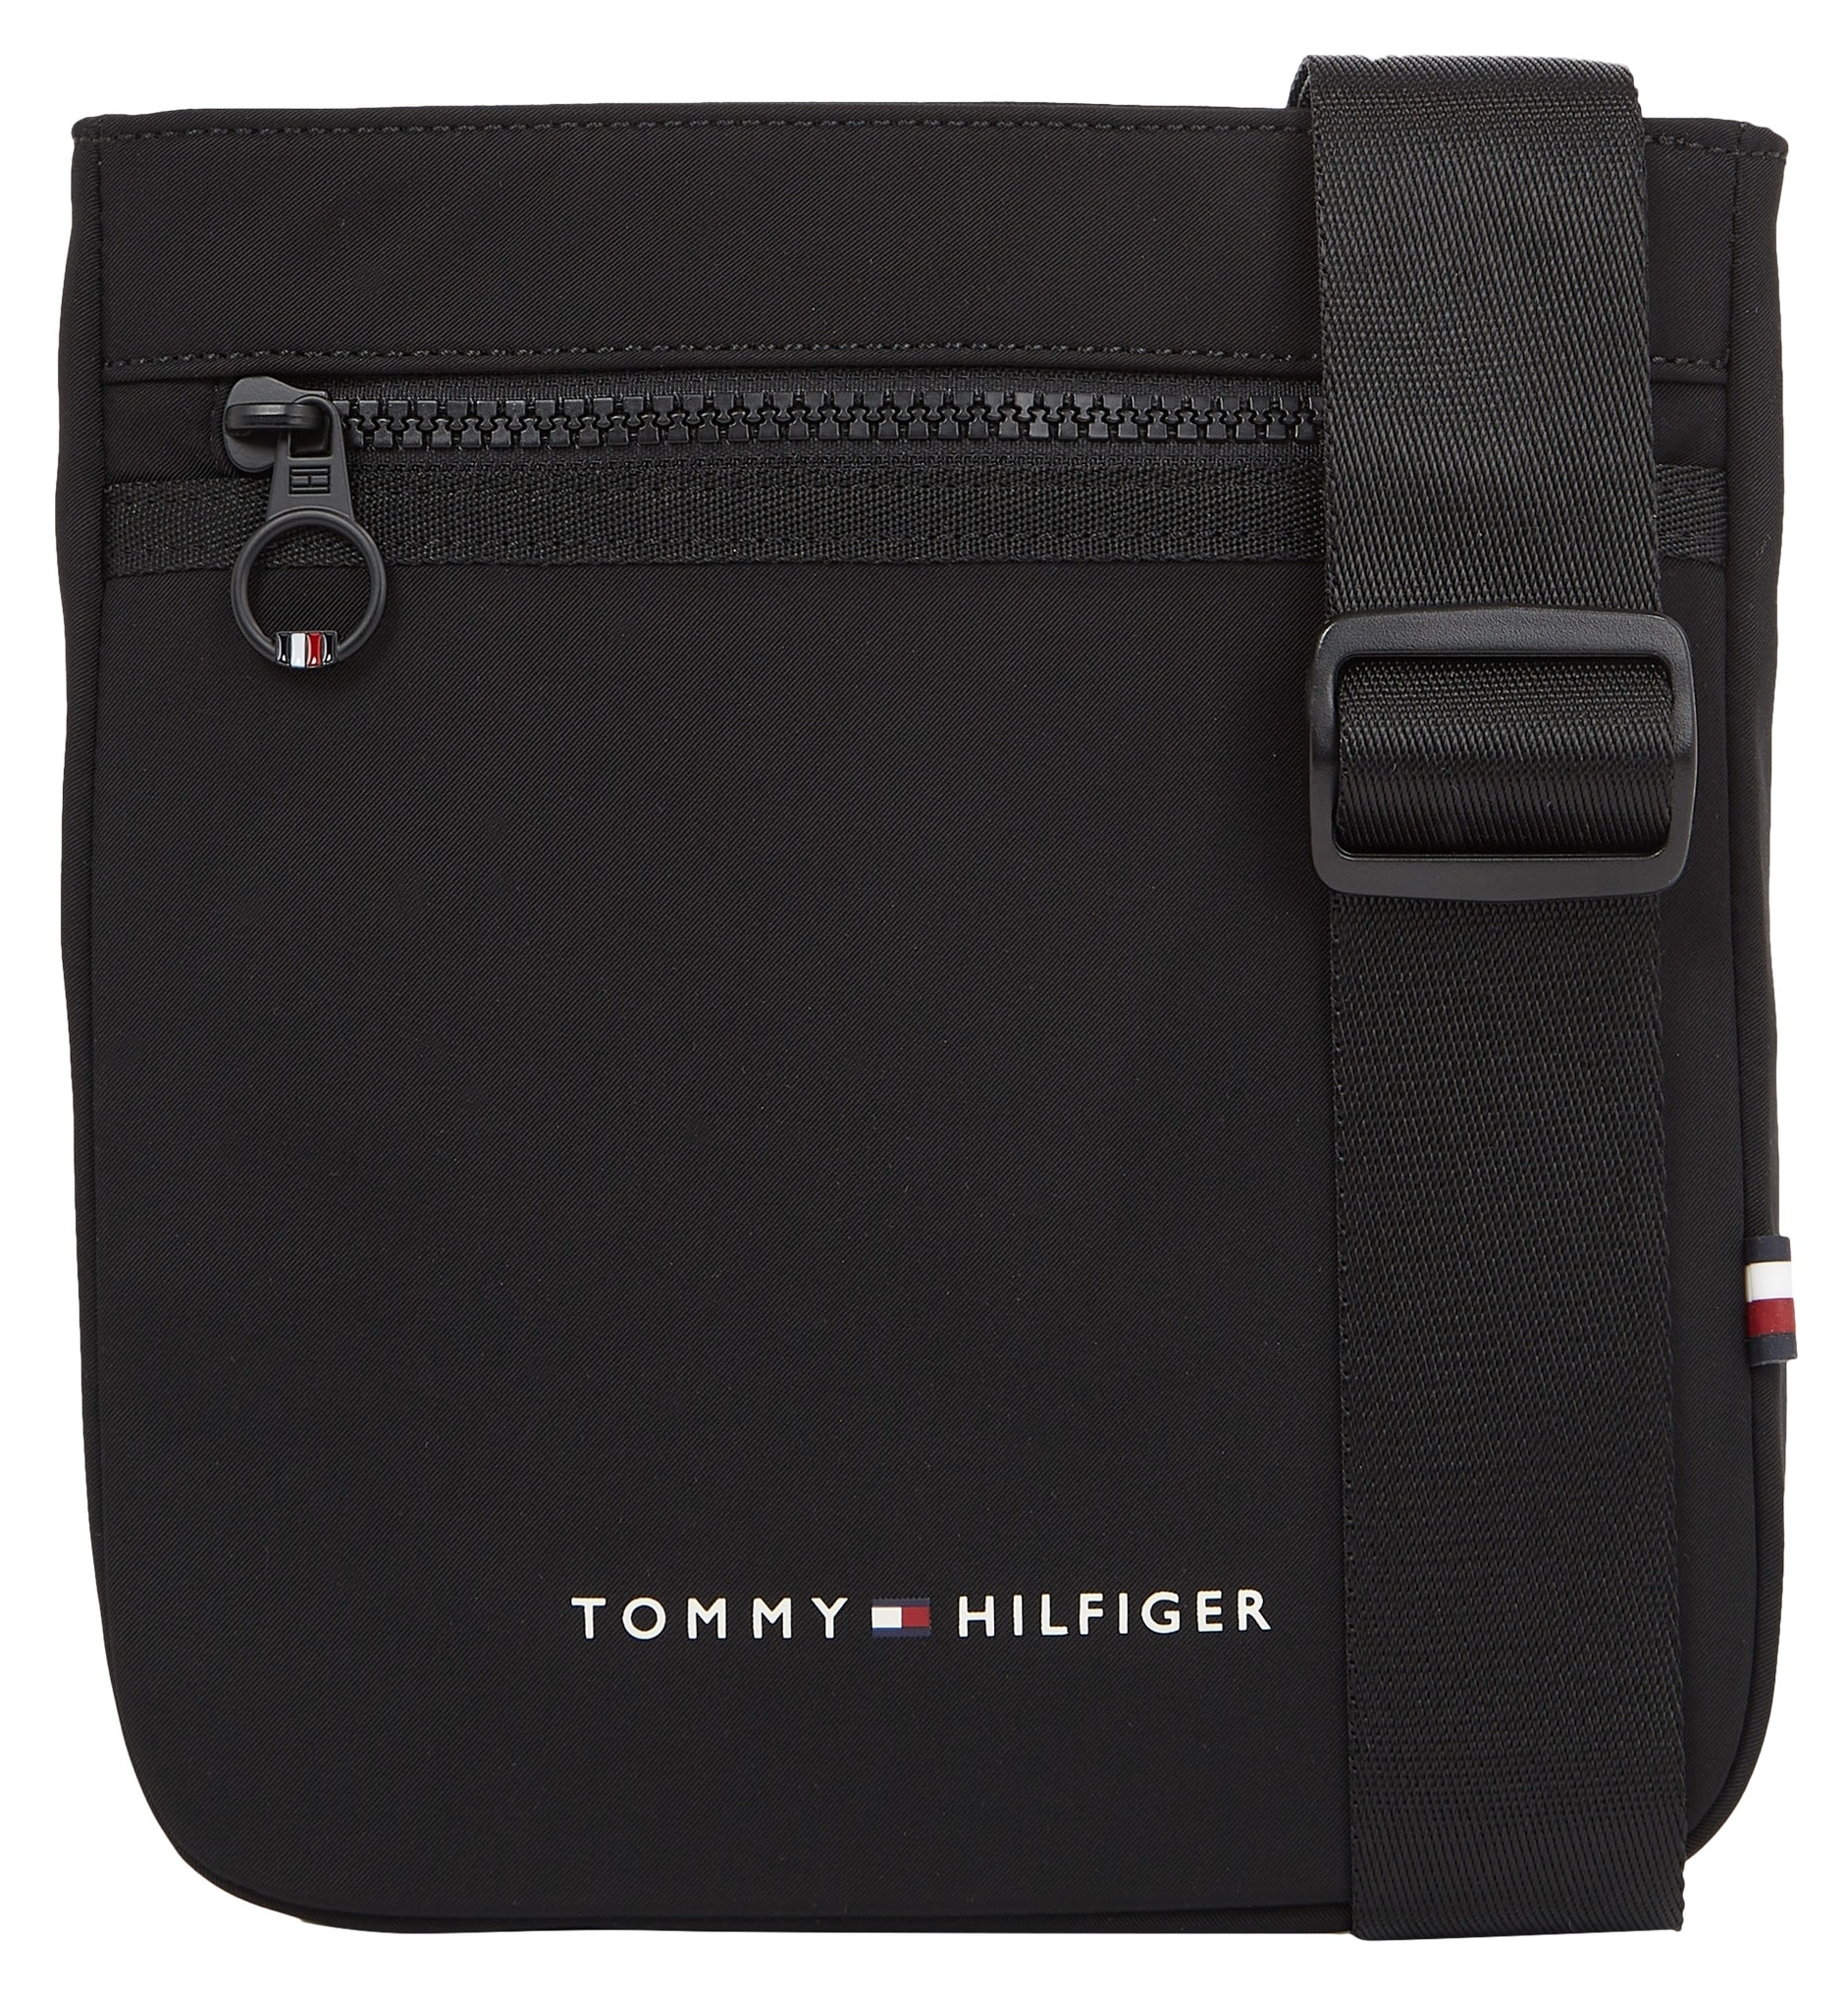 SKYLINE CROSSOVER«, Bag Hilfiger Shop »TH Streifendetail MINI OTTO charakteristischem mit Online Tommy im Mini